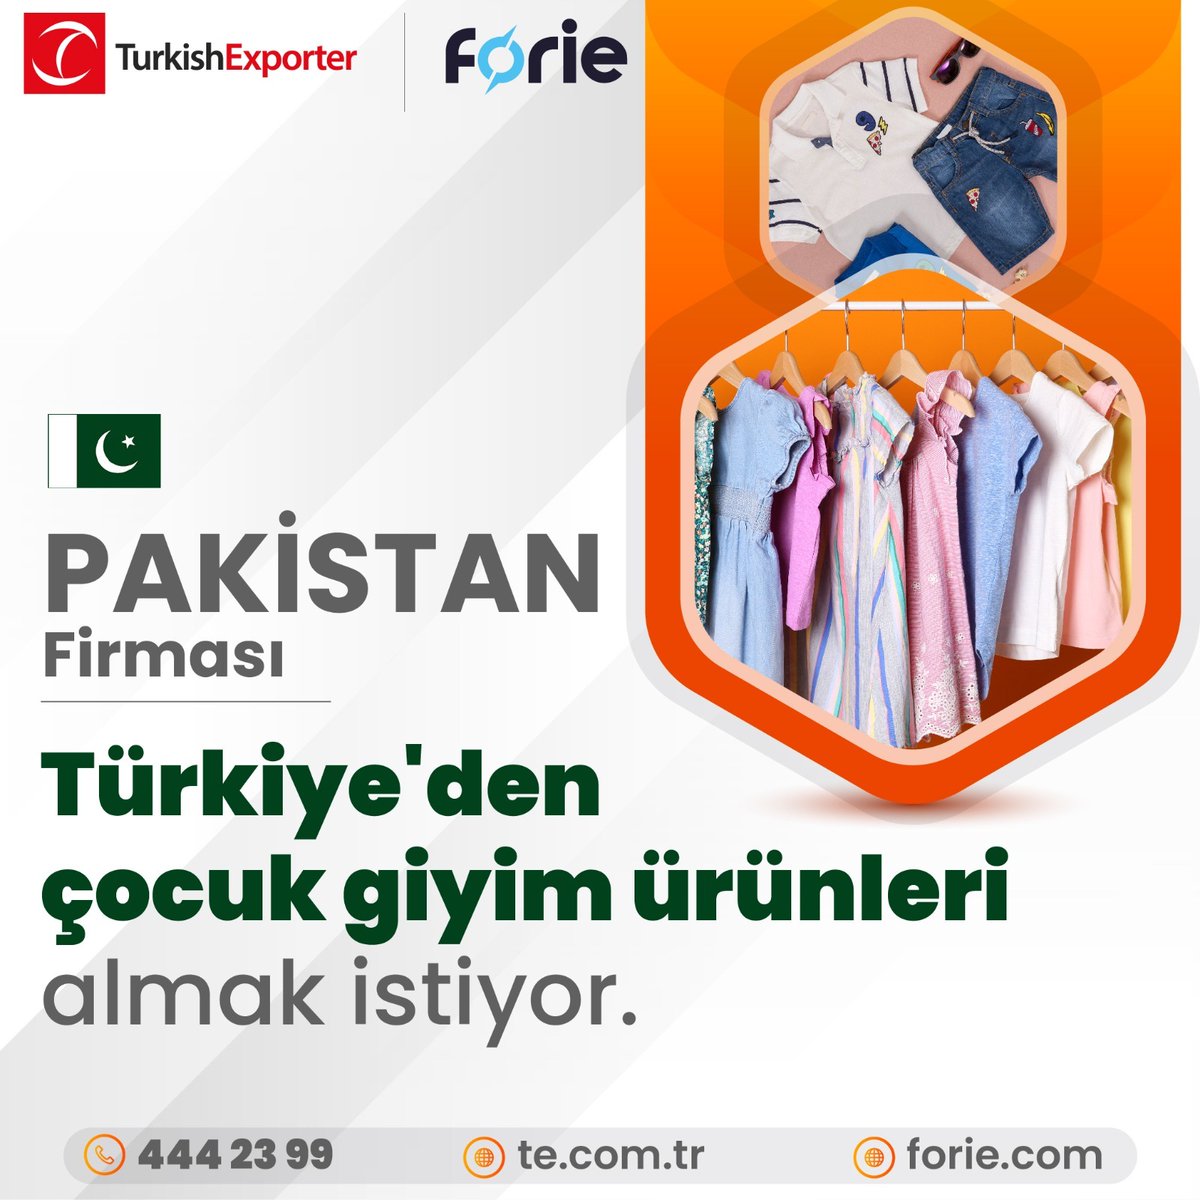 Pakistan firması,
Türkiye'den çocuk giyim ürünleri almak istiyor.

📍t.ly/rEVa

#ihracat #ithalat #B2B #export #import